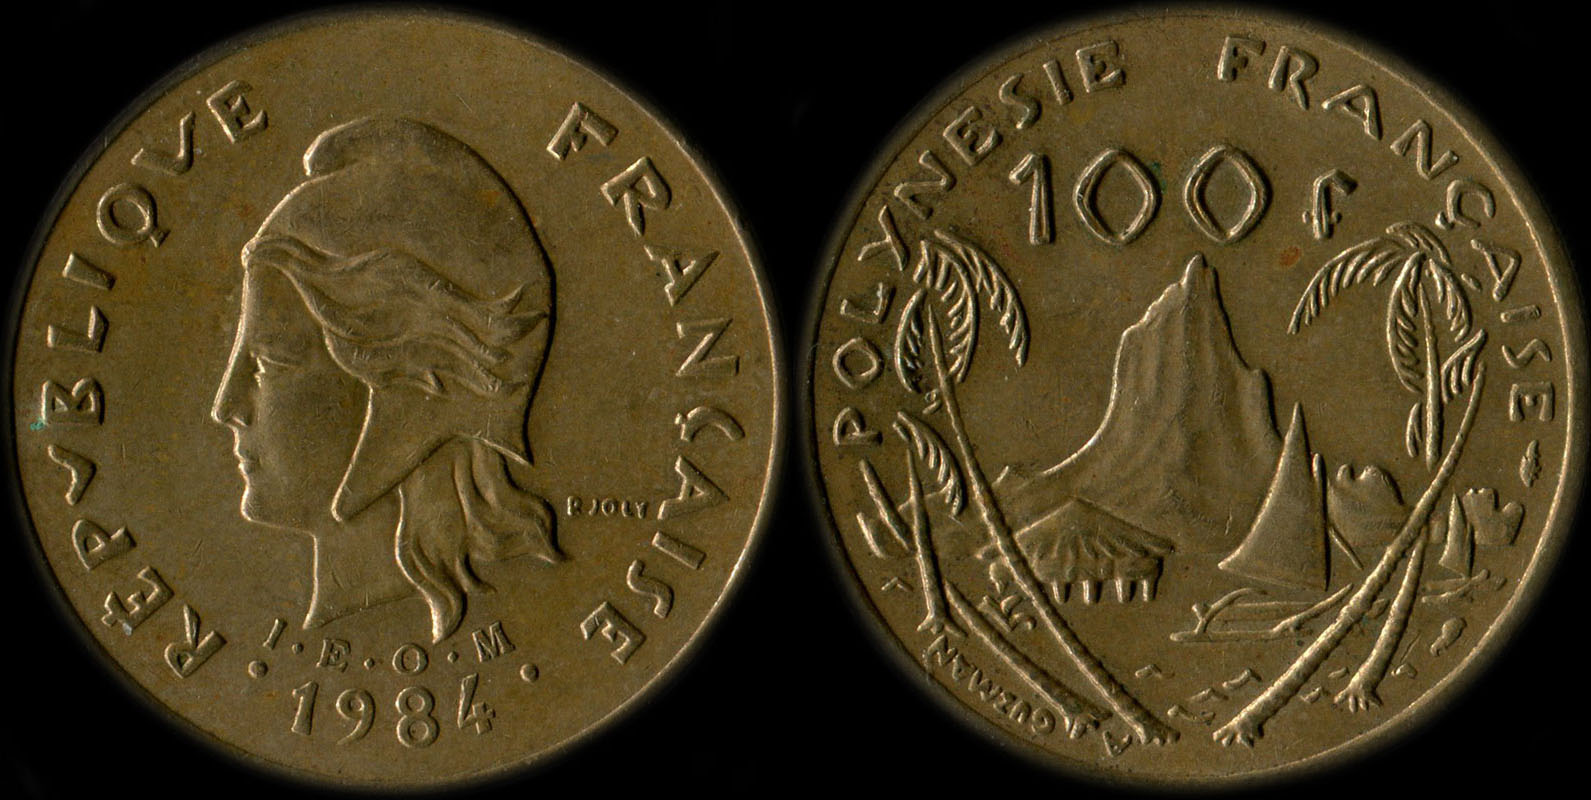 Pice de 100 francs 1984 - I.E.O.M. Polynsie franaise